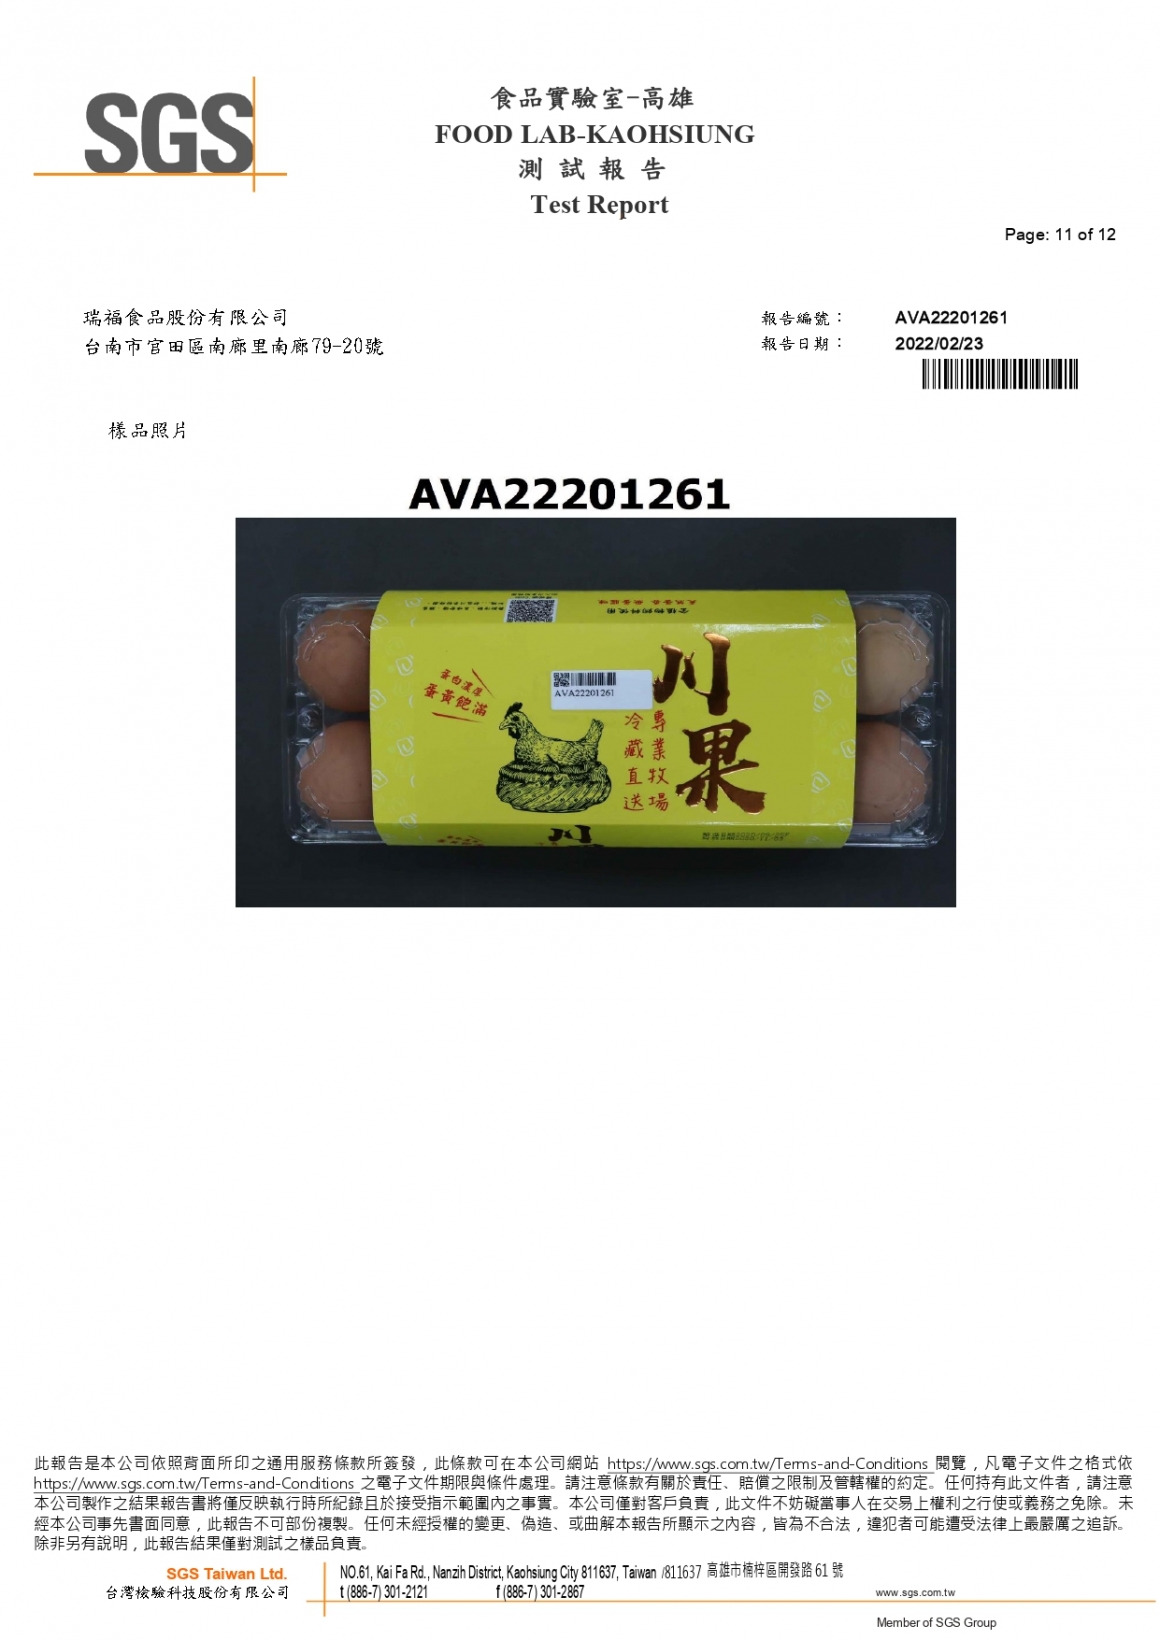 川果紅殼蛋202202 408項_page-0011